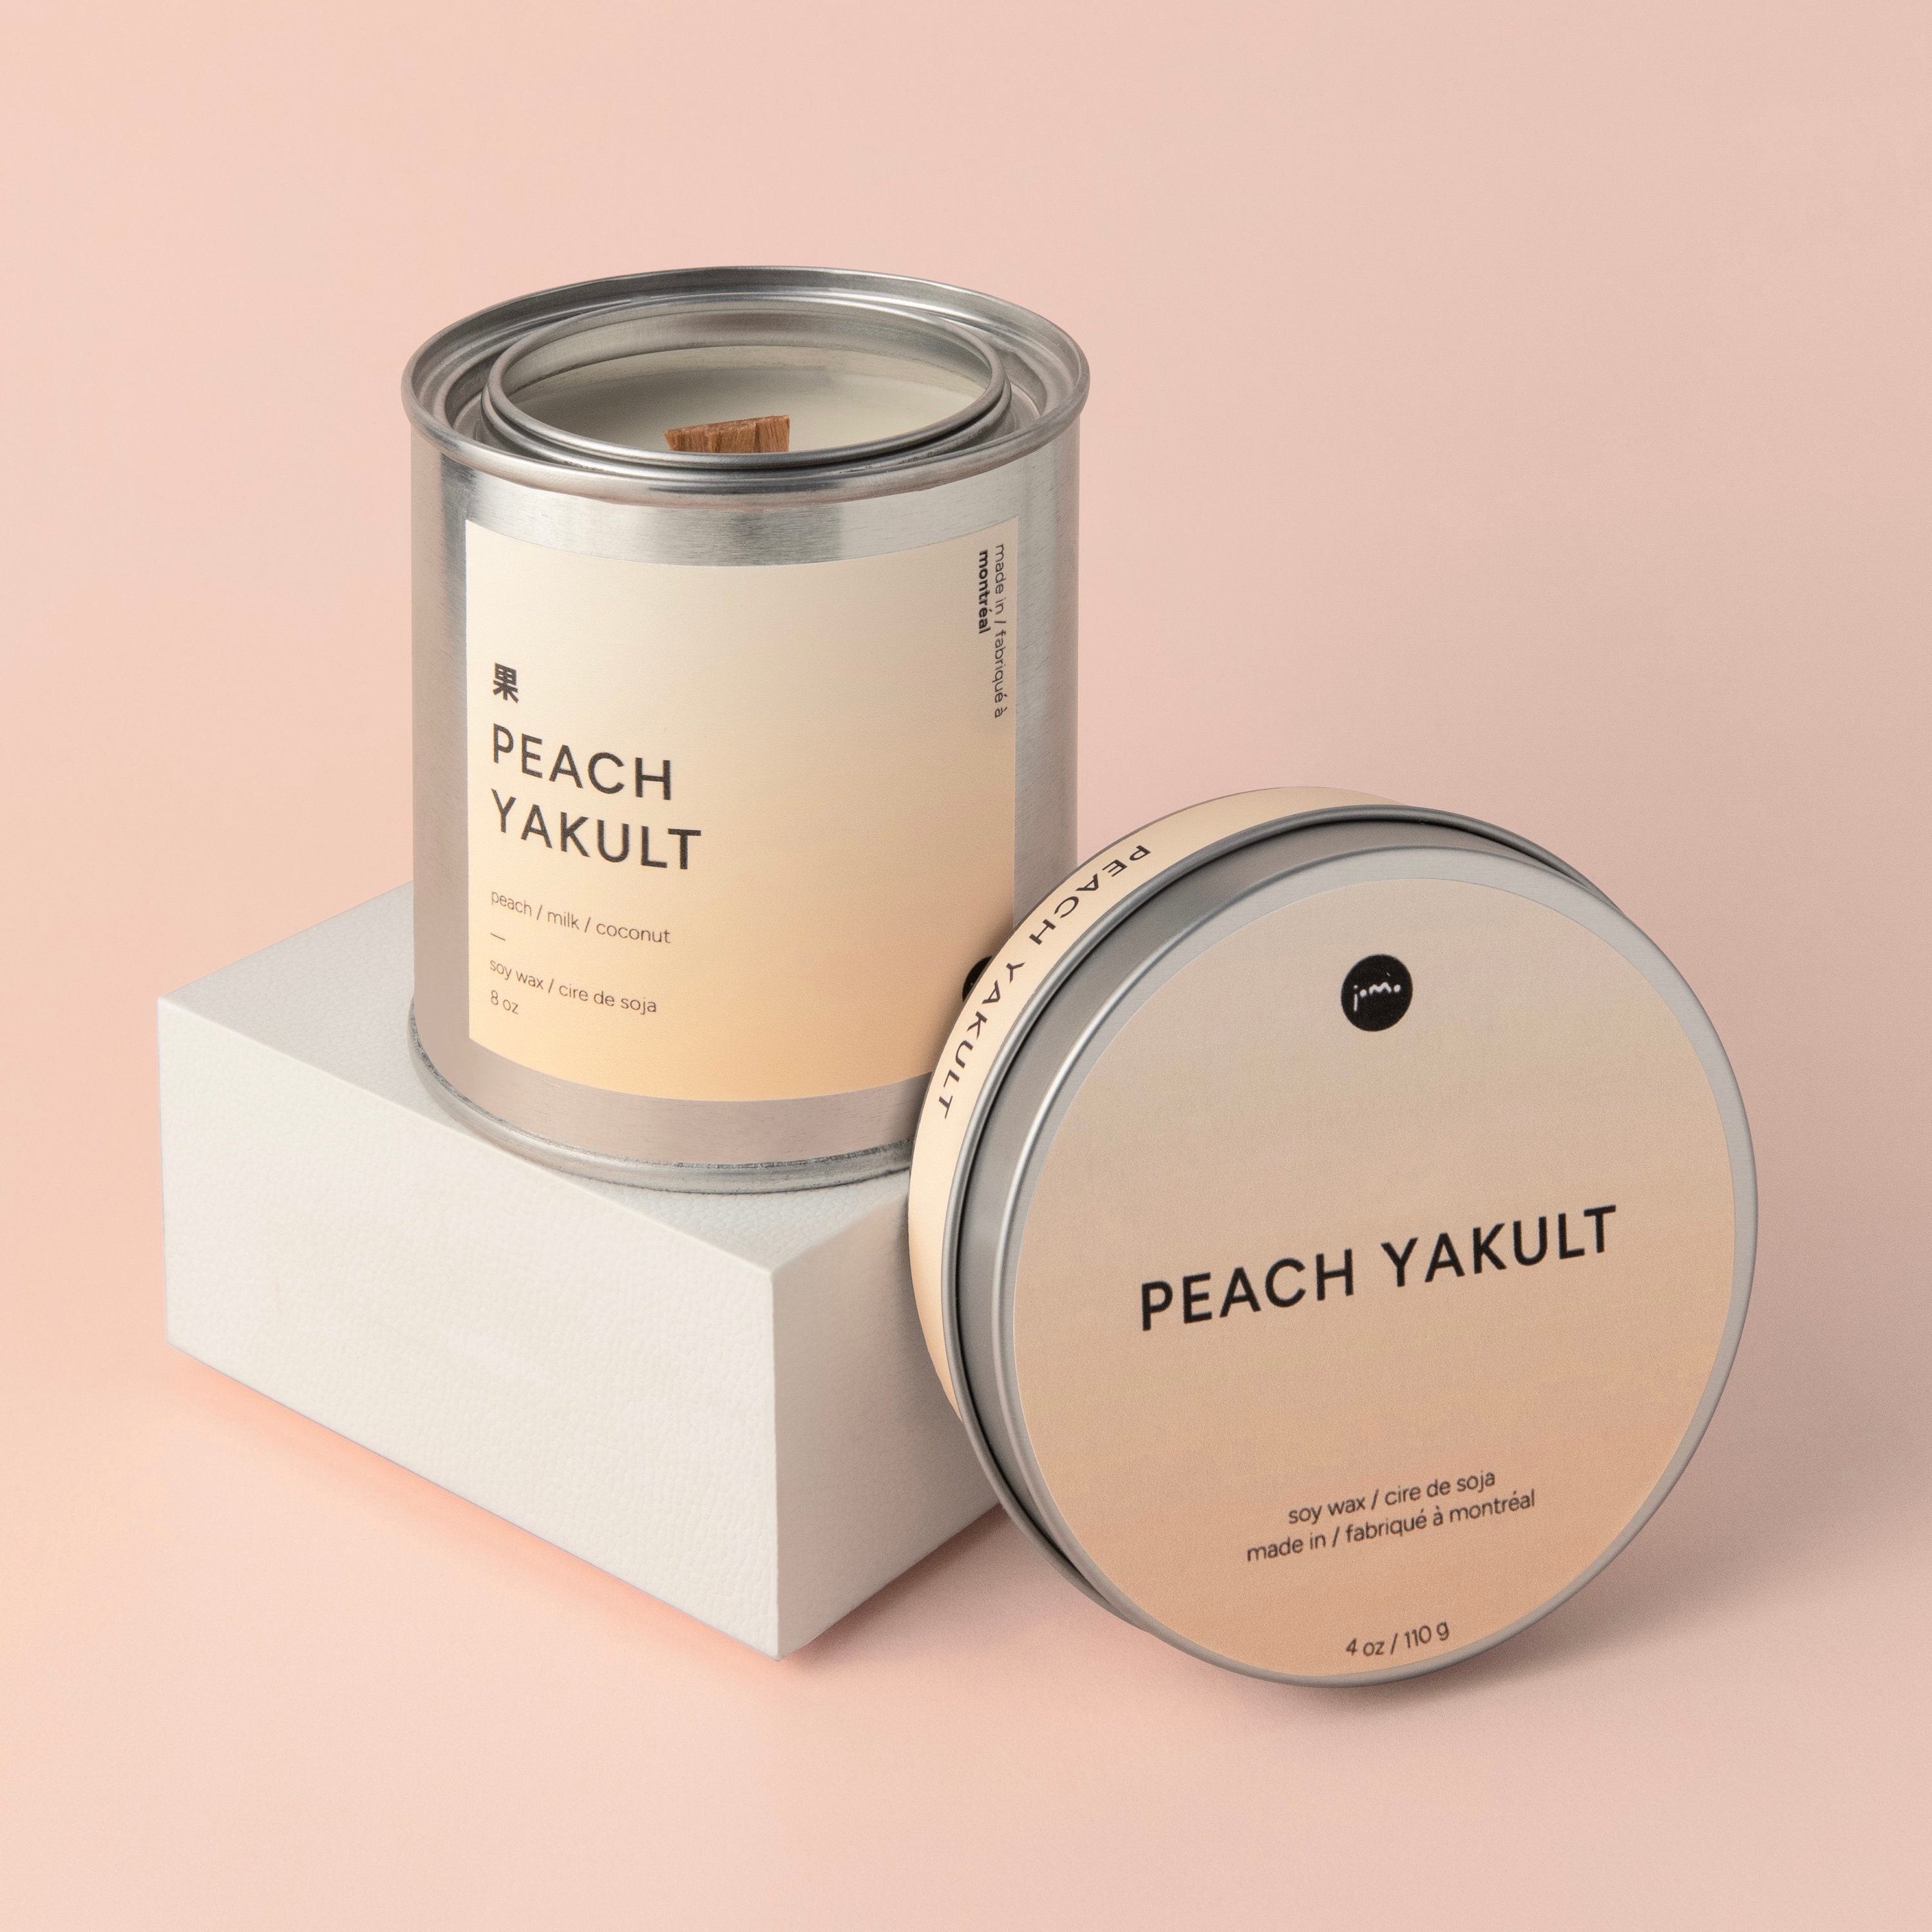 Peach Yakult | Peach + Milk + Coconut | Soy Wax Candle 